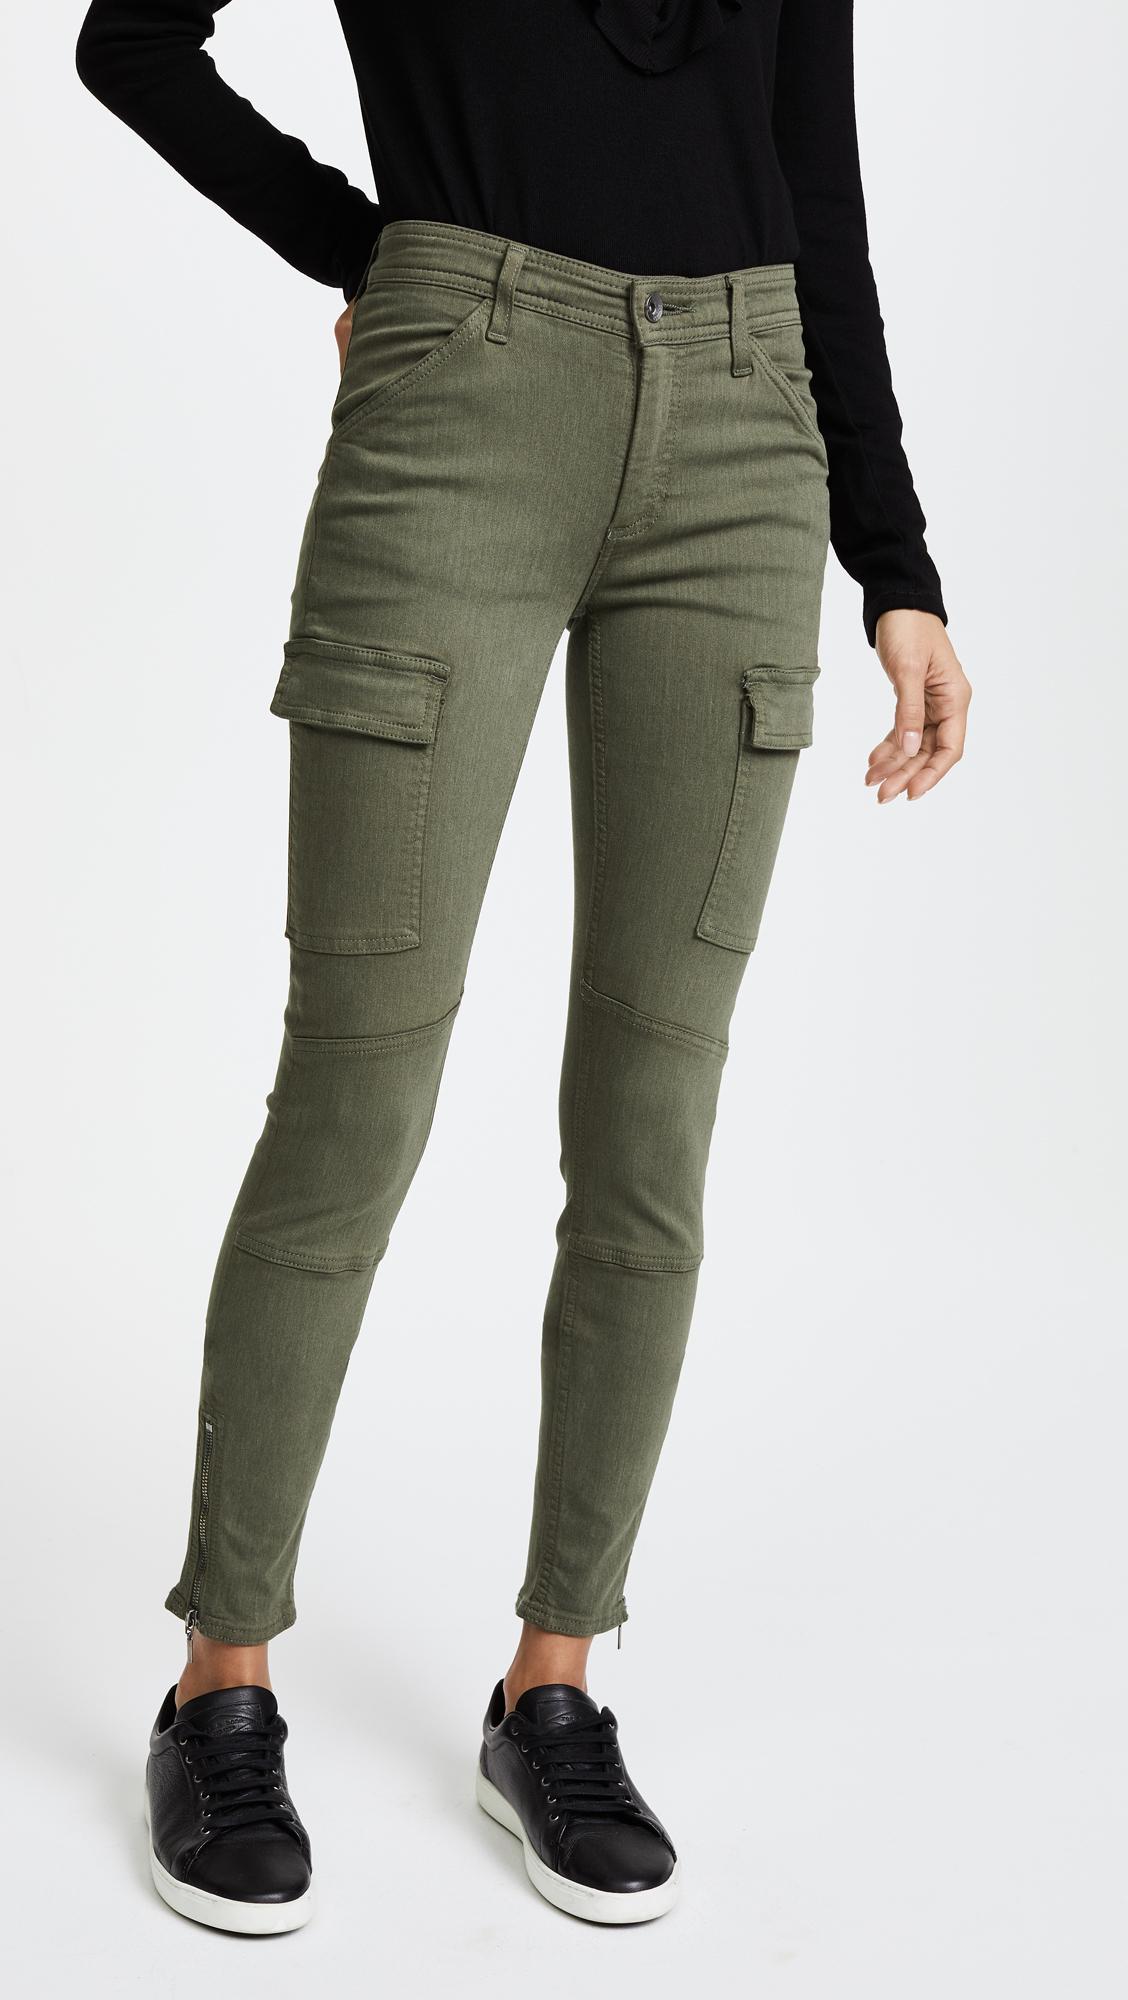 Lyst - Splendid Skinny Cargo Pants in Green